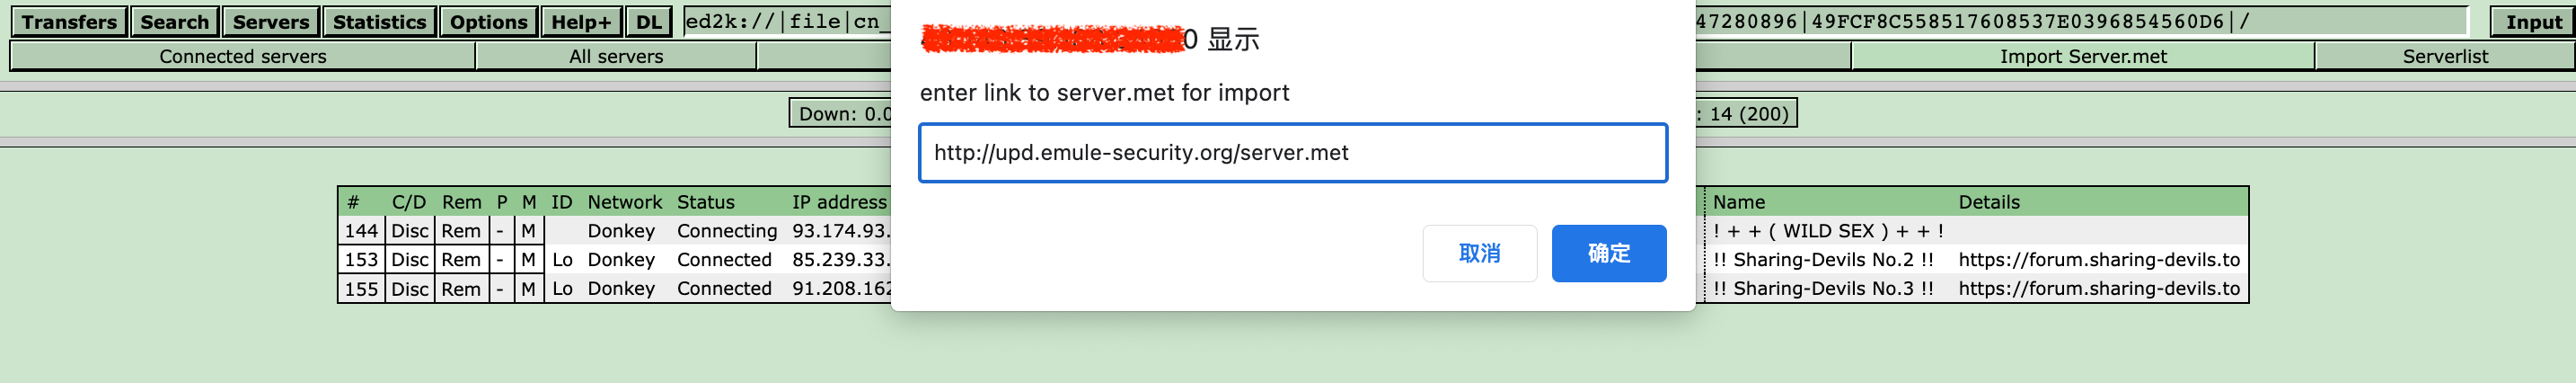 import-server.met